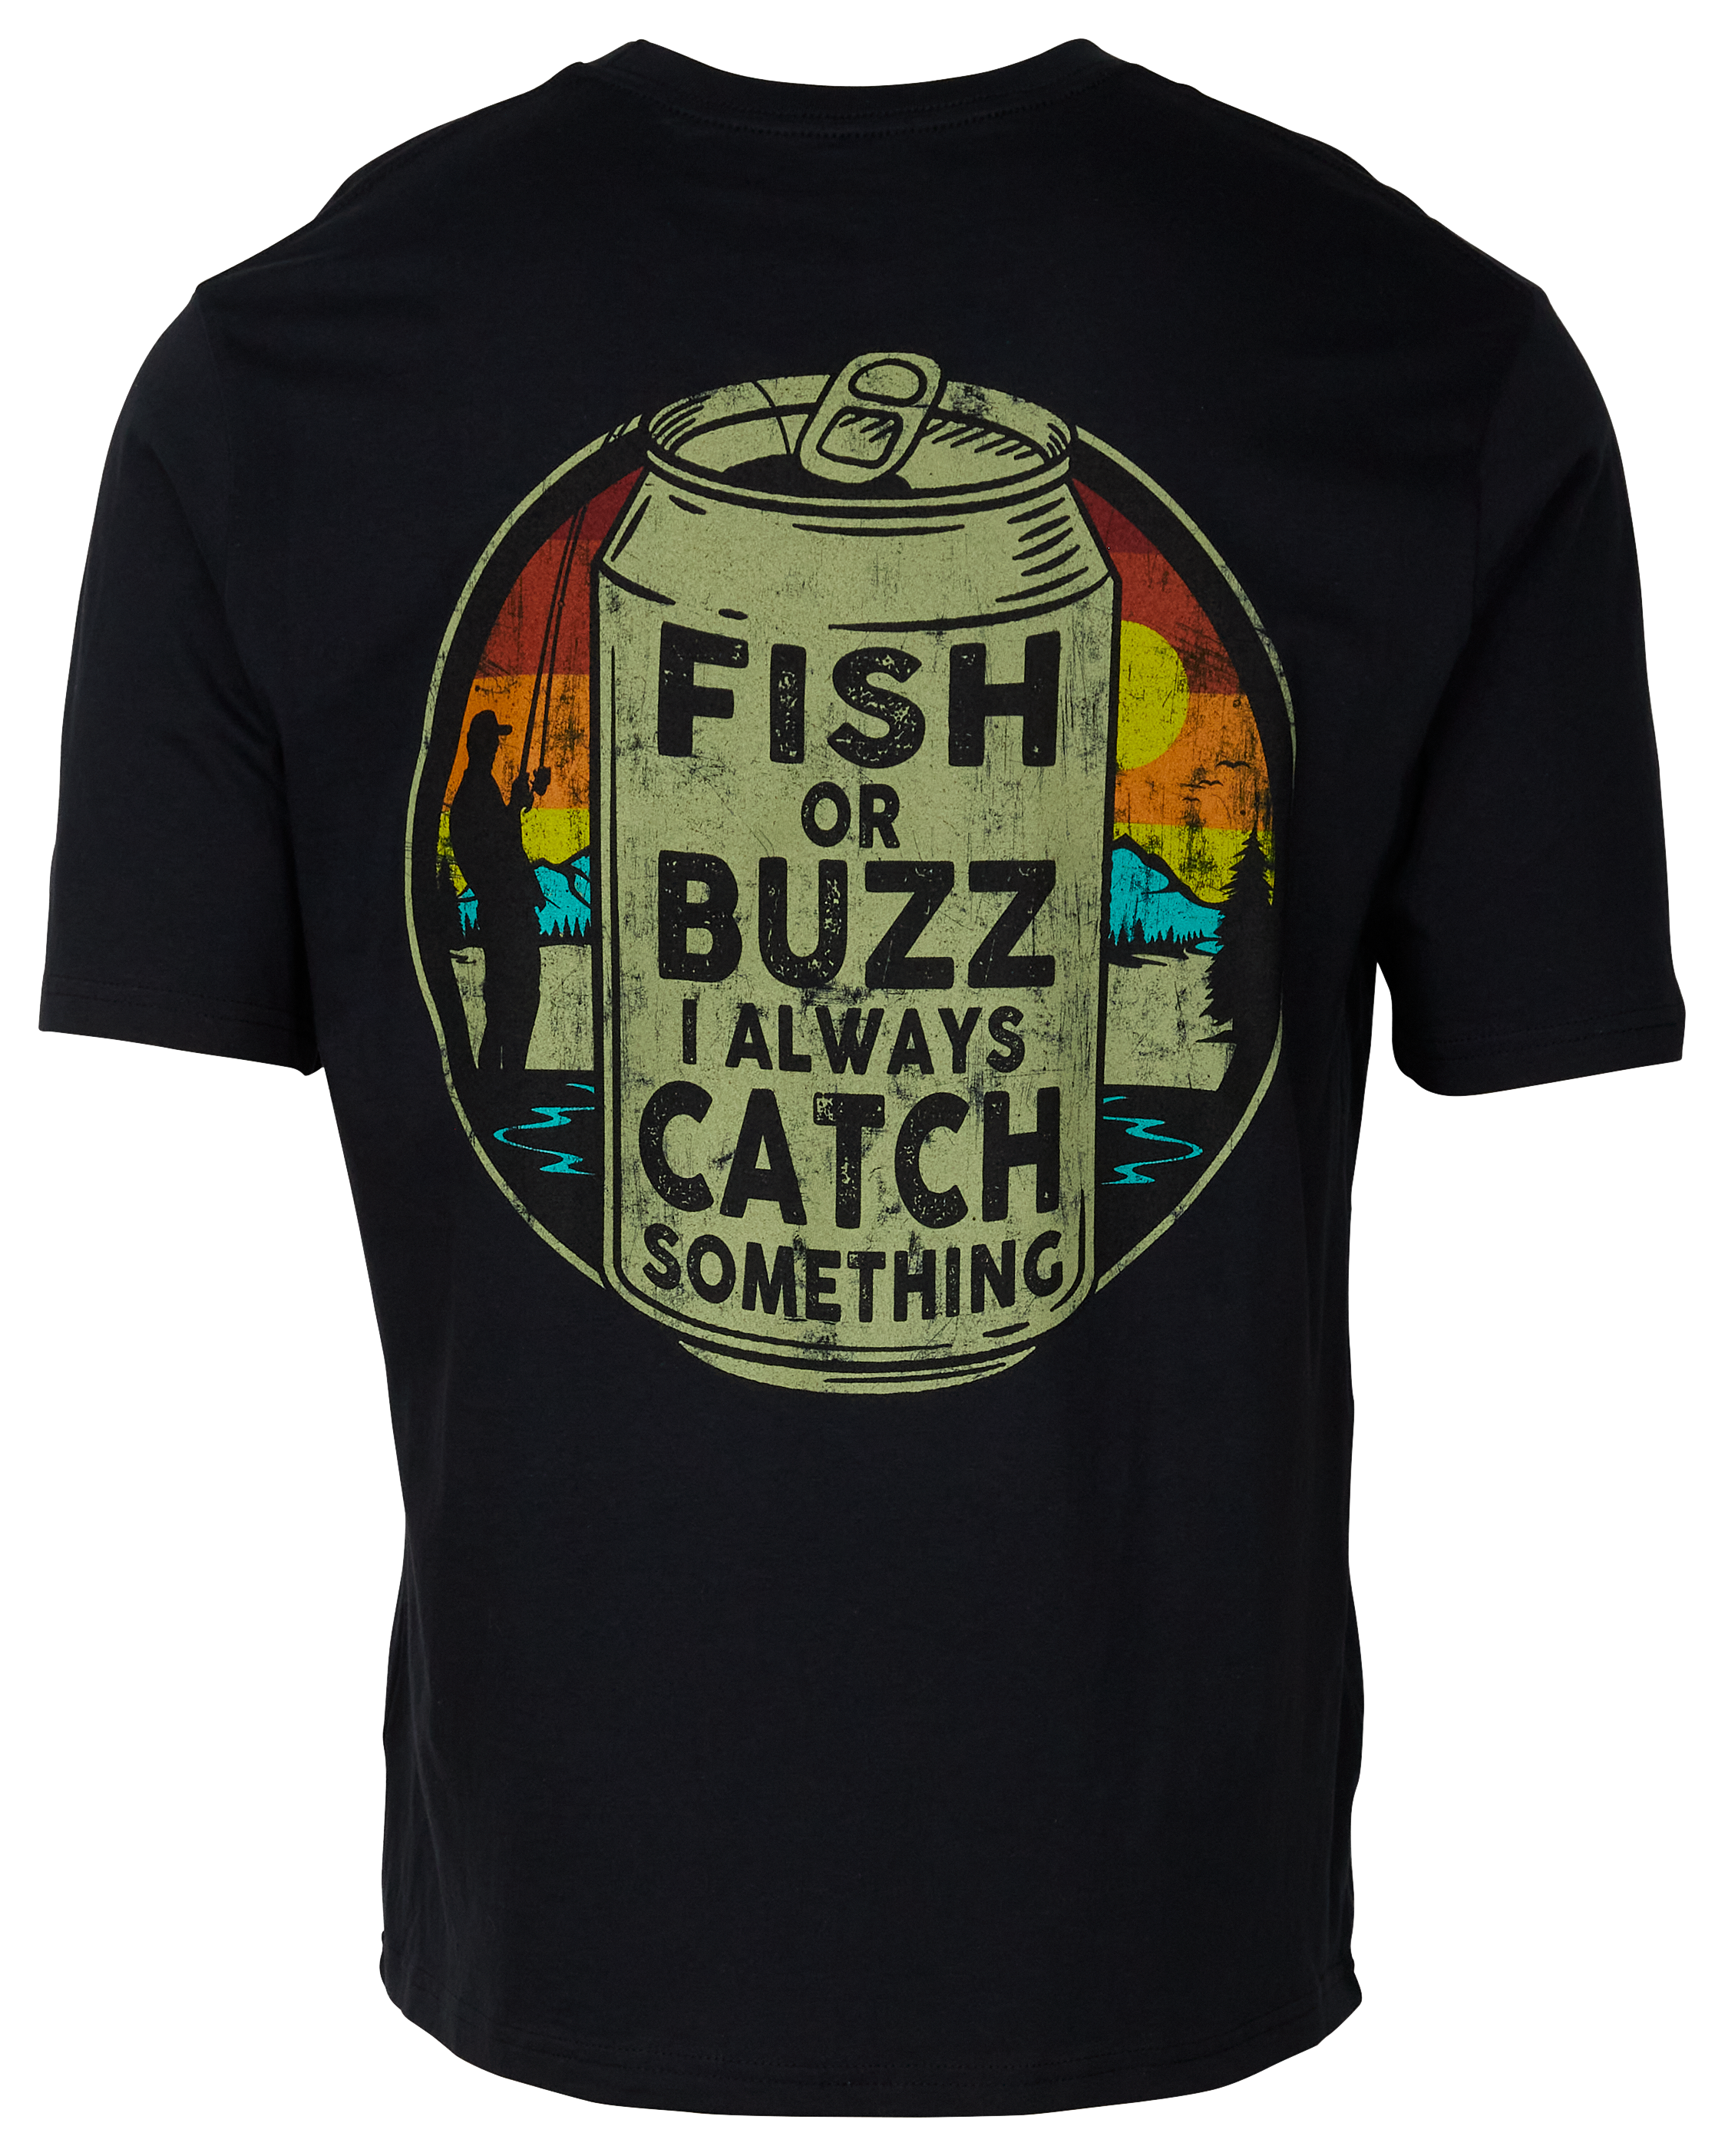 Bass Pro Shops Catch A Buzz Short-Sleeve T-Shirt for Men - Black - 2XL